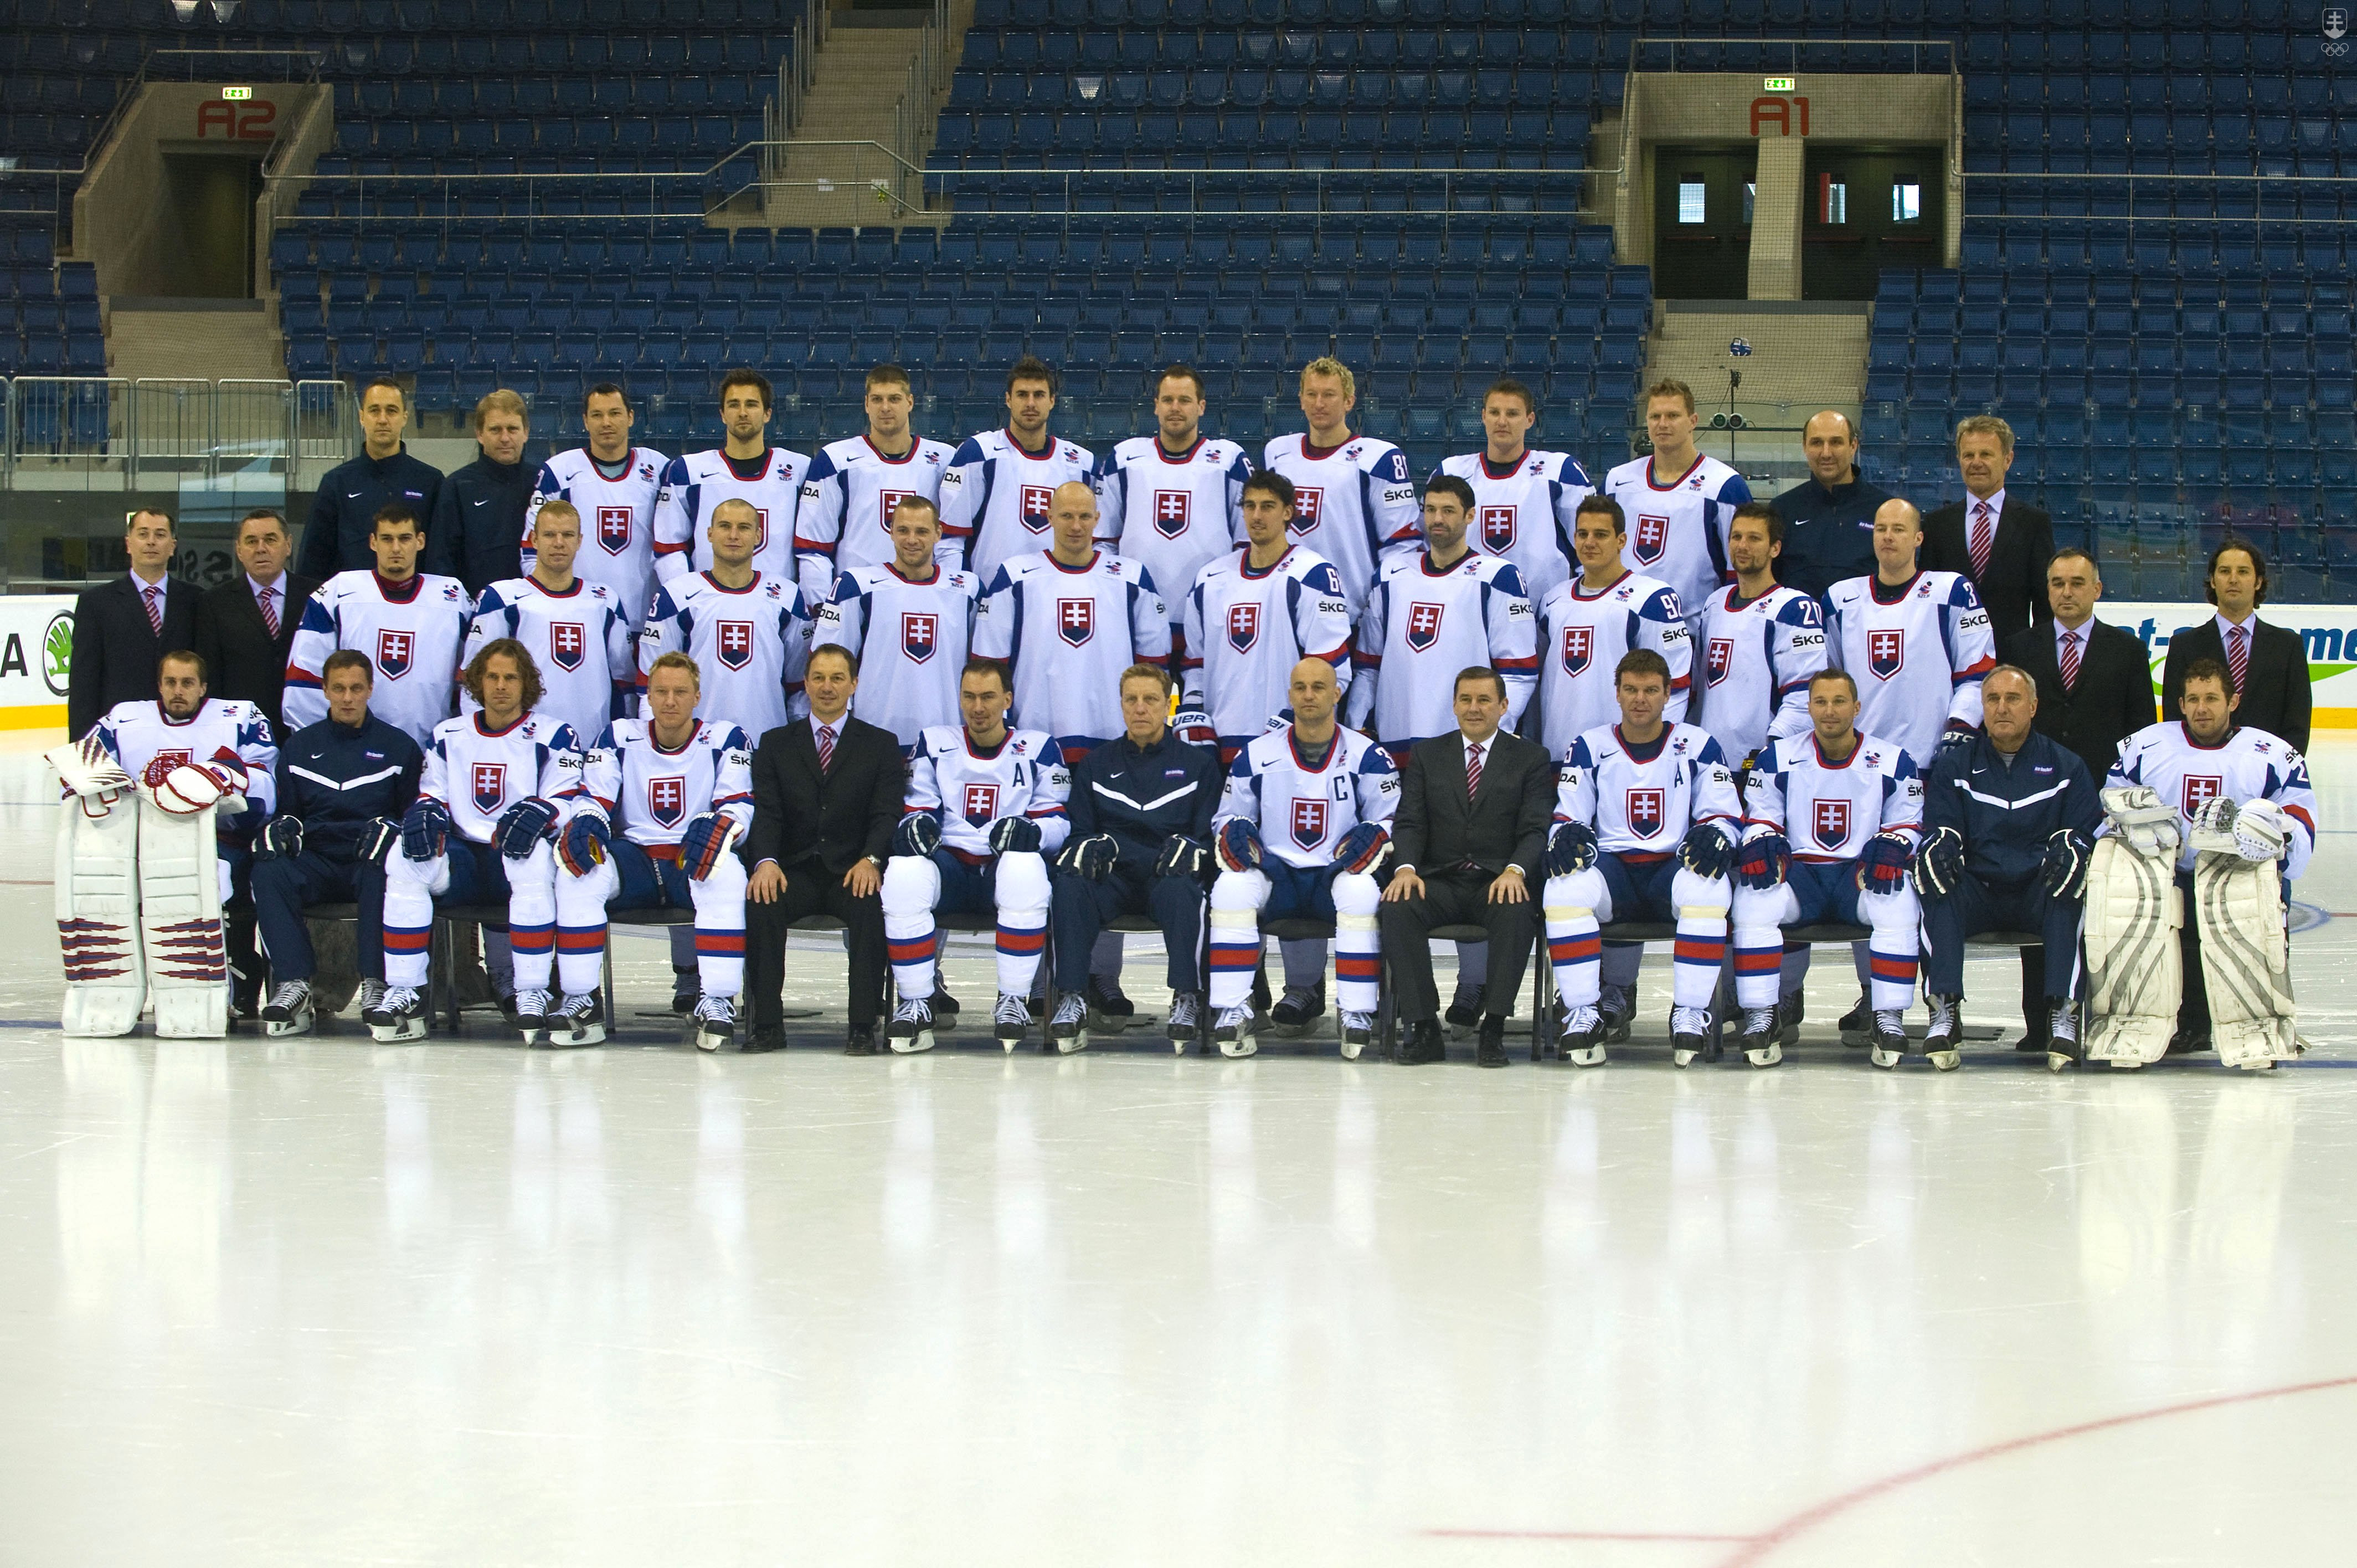 Snímka z oficiálneho fotografovania hokejovej reprezentácie Slovenska na MS 2011 v ľadovom hokeji 2. mája 2011 v Bratislave.